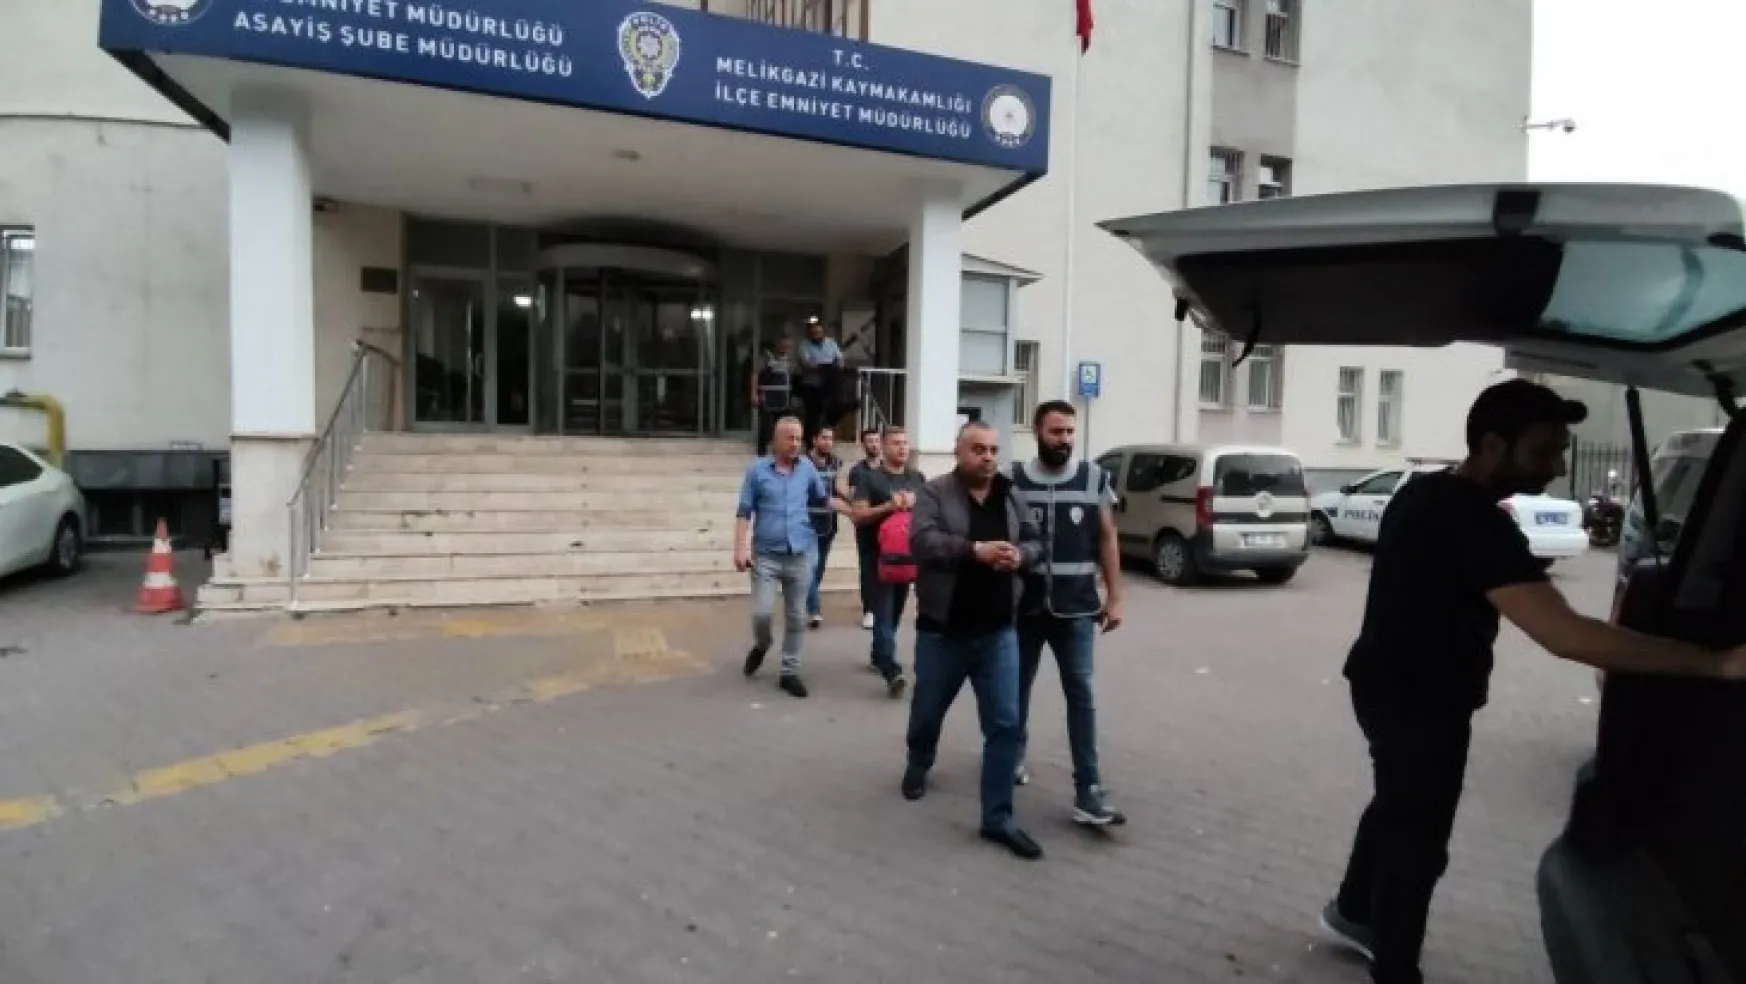 Kayseri'de kesinleşmiş hapis cezası bulunan 4 şahıs yakalandı